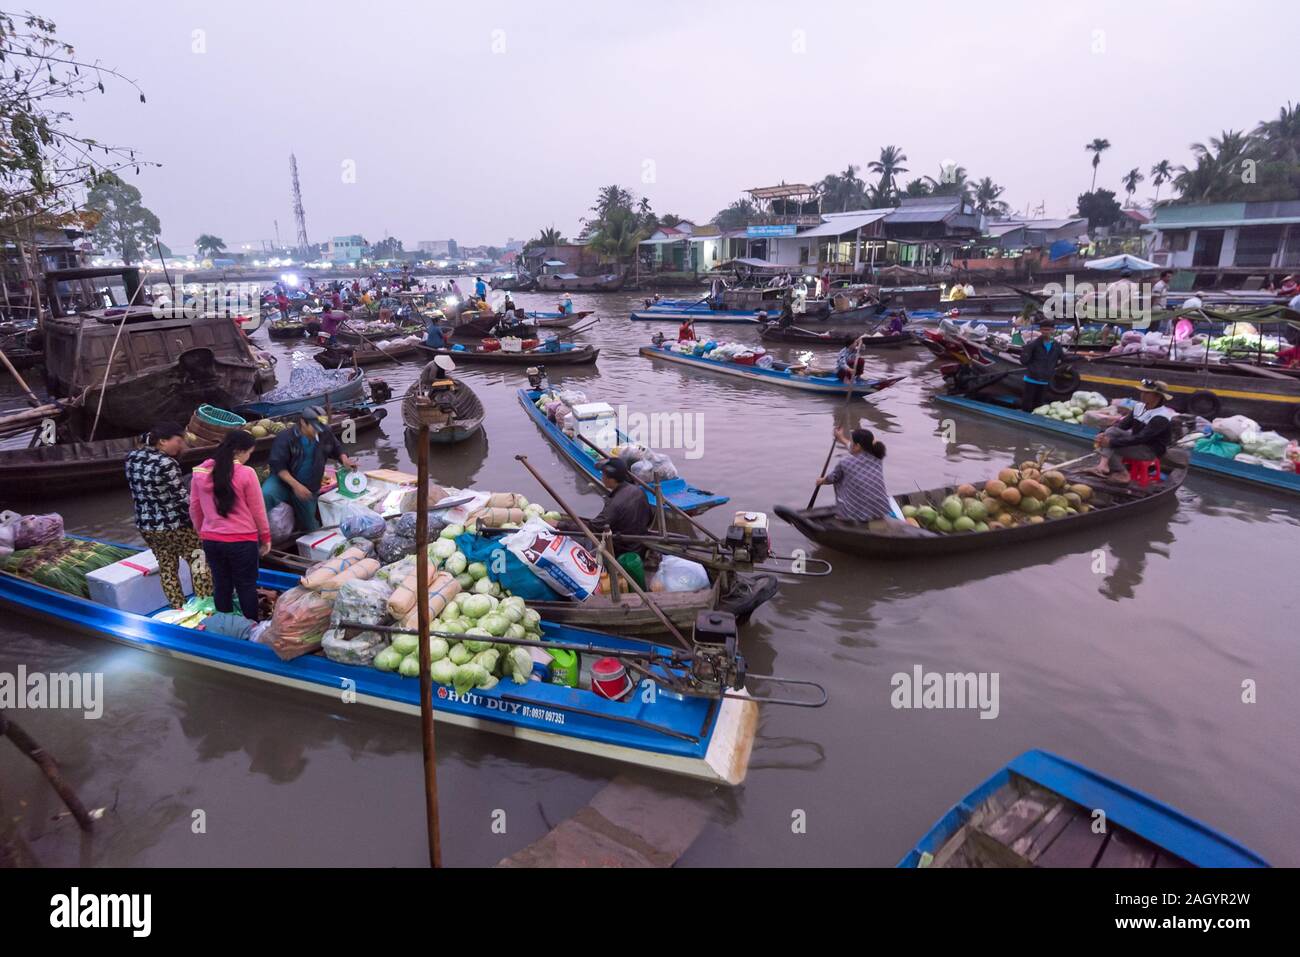 CAN Tho, Viet Nam .11 févr. 2018.Phong Dien marché flottant très célèbre dans le delta du Mékong Banque D'Images